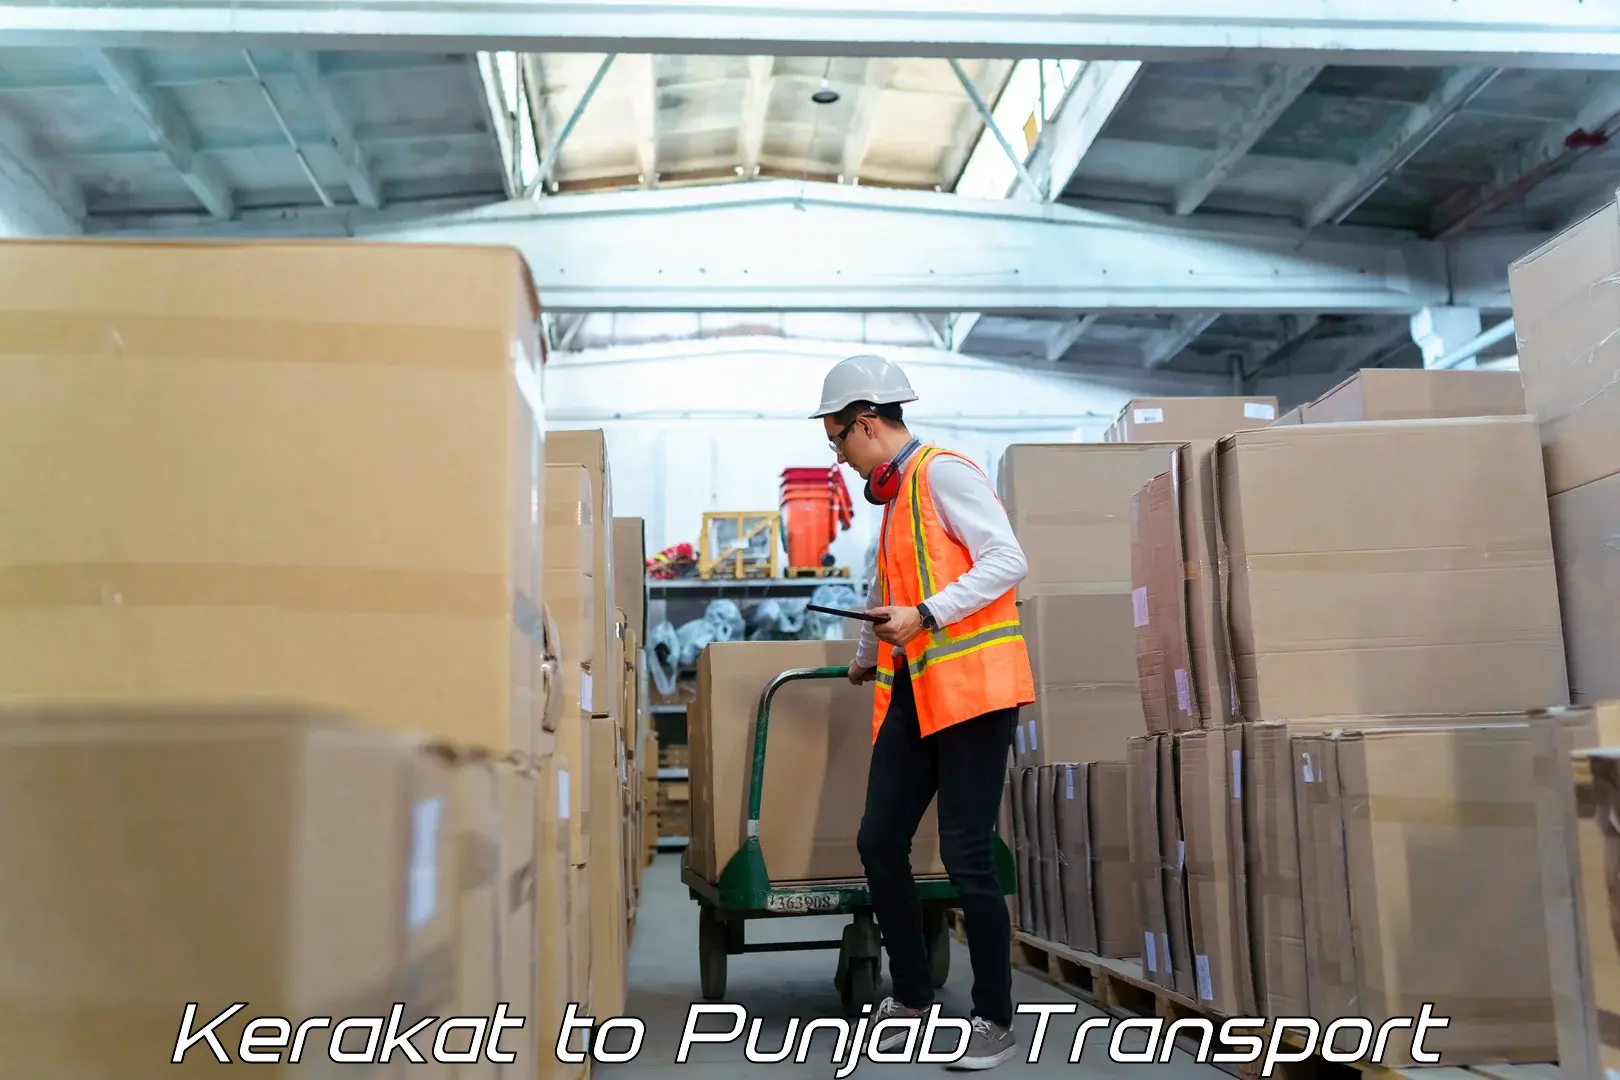 Cargo train transport services in Kerakat to Punjab